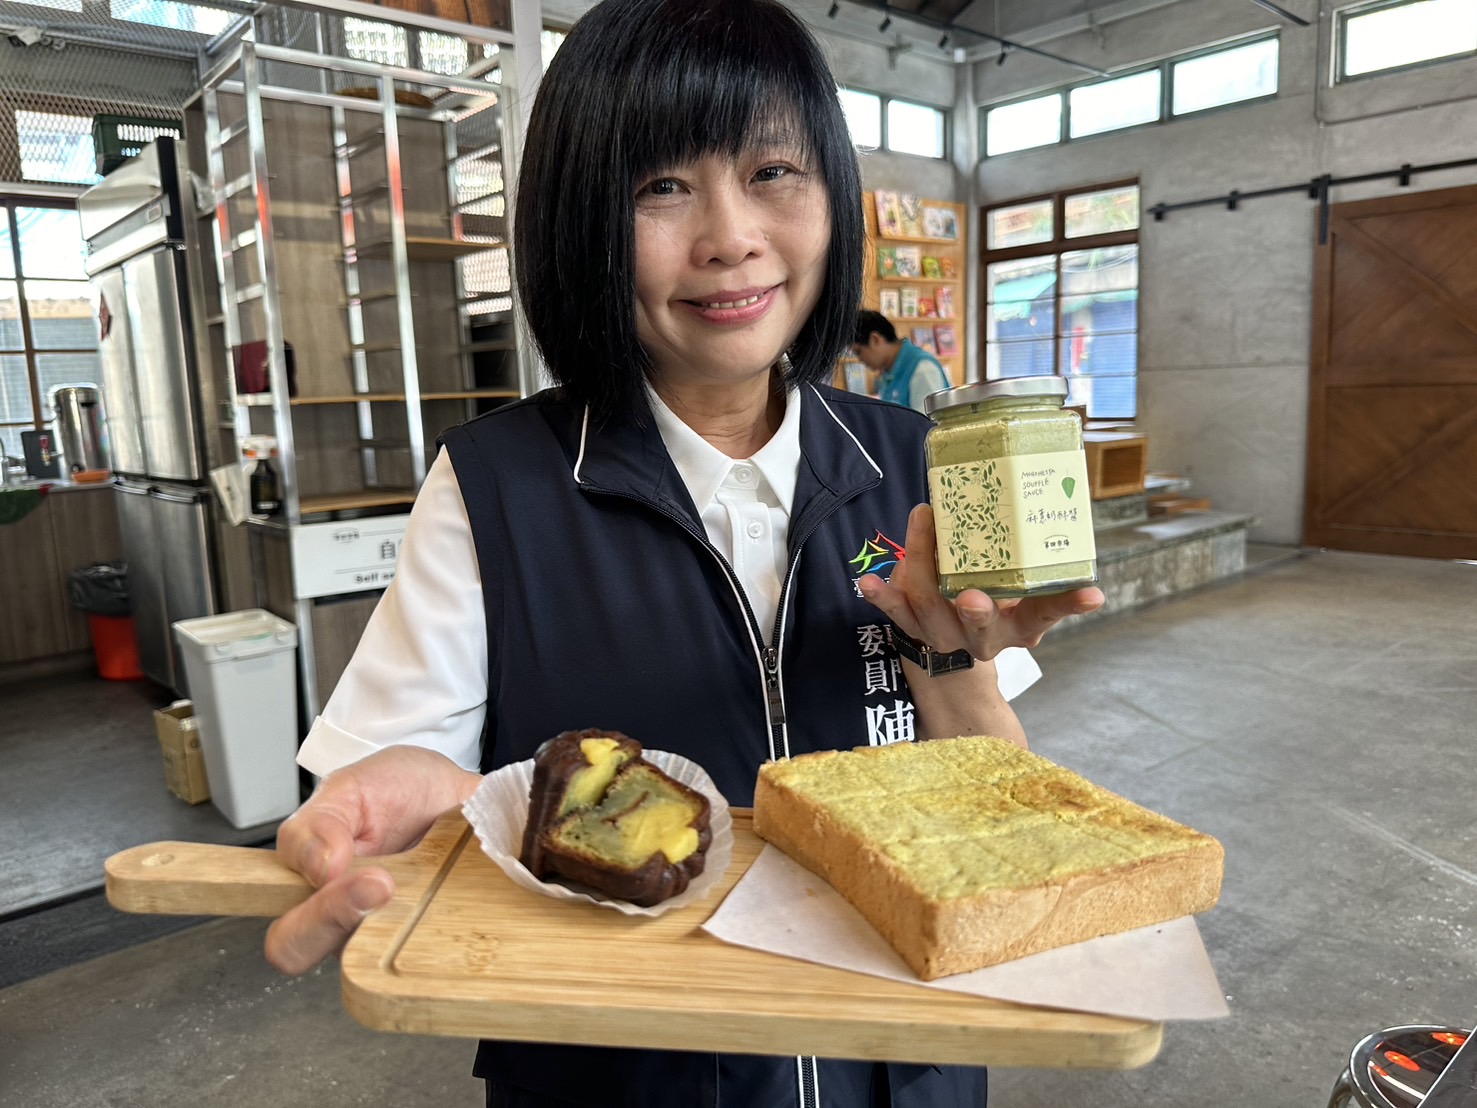 台中市劳工局「第四市场」青创基地把麻薏做成奶酥酱。记者黄寅／摄影